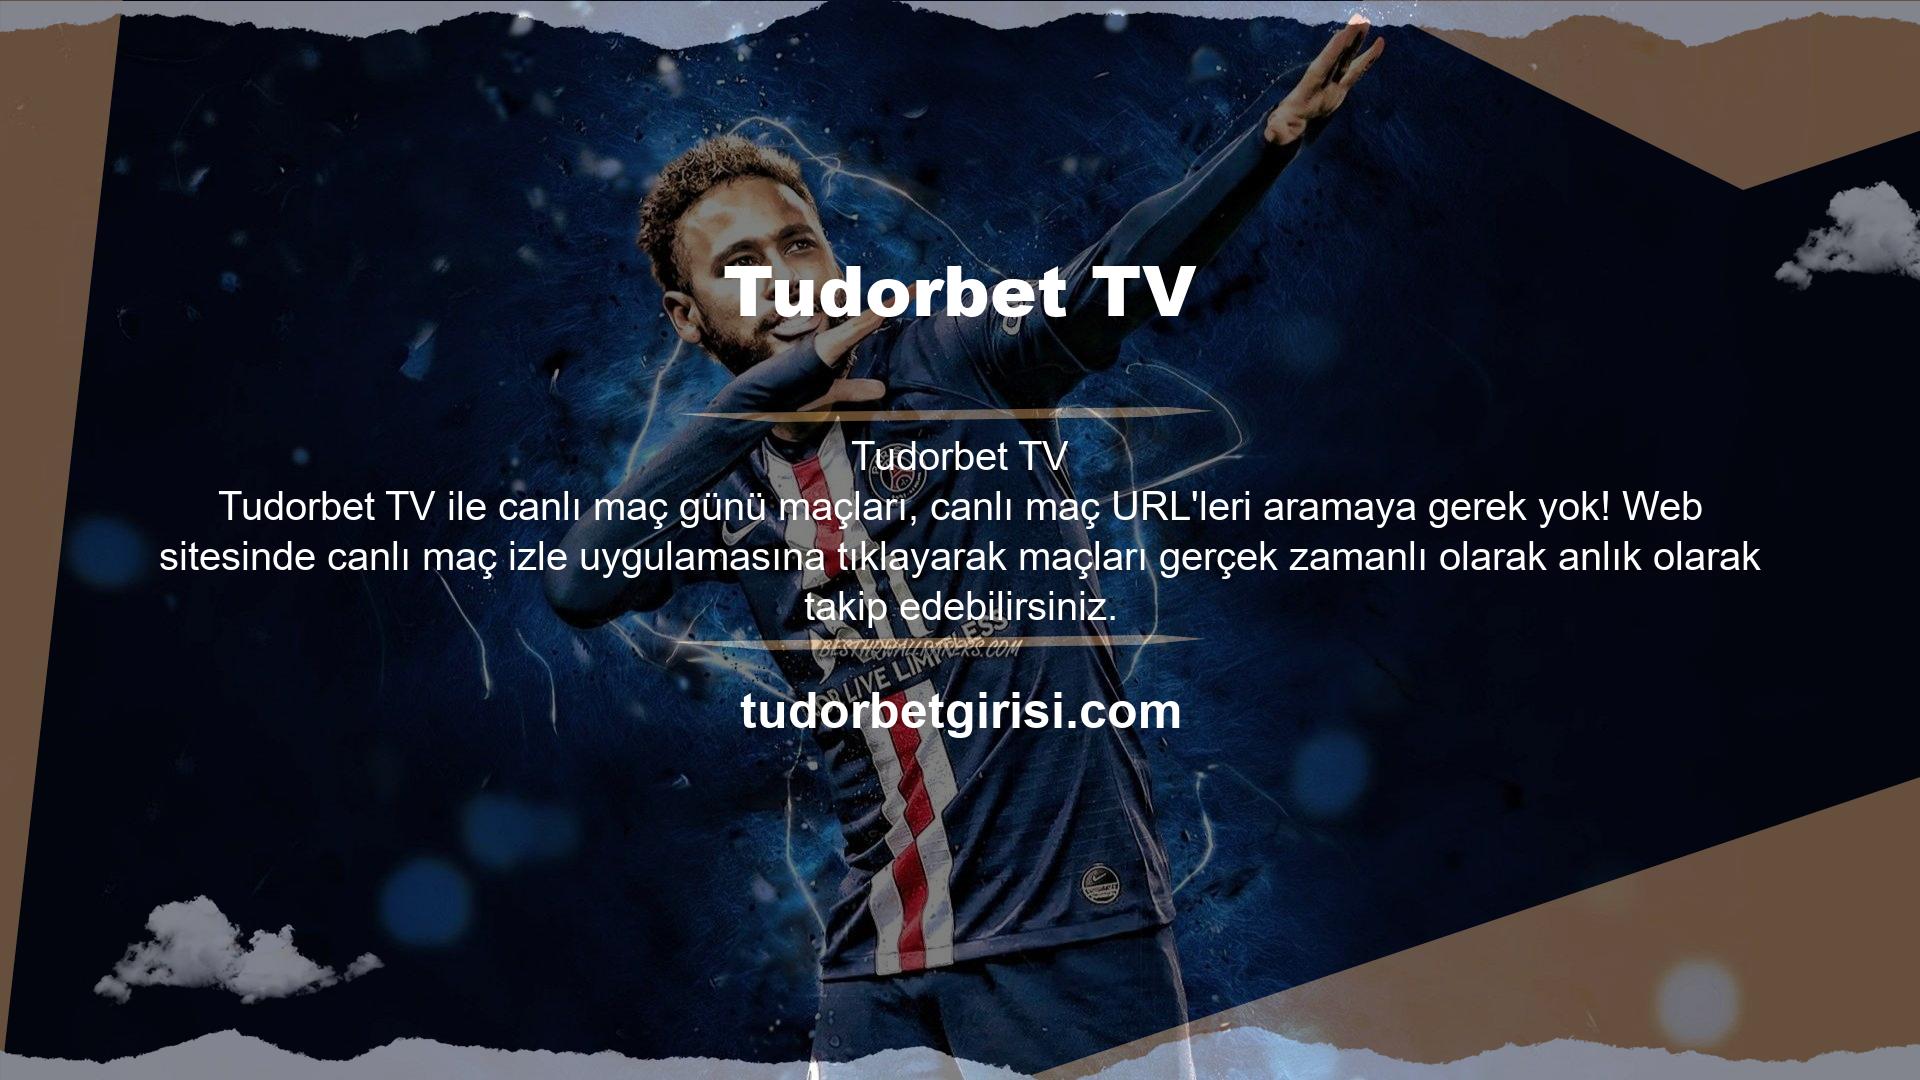 Tudorbet TV canlı yayın hizmetinde Premier Lig, La Liga, Bundesliga ve Series maçlarını izleyebilirsiniz